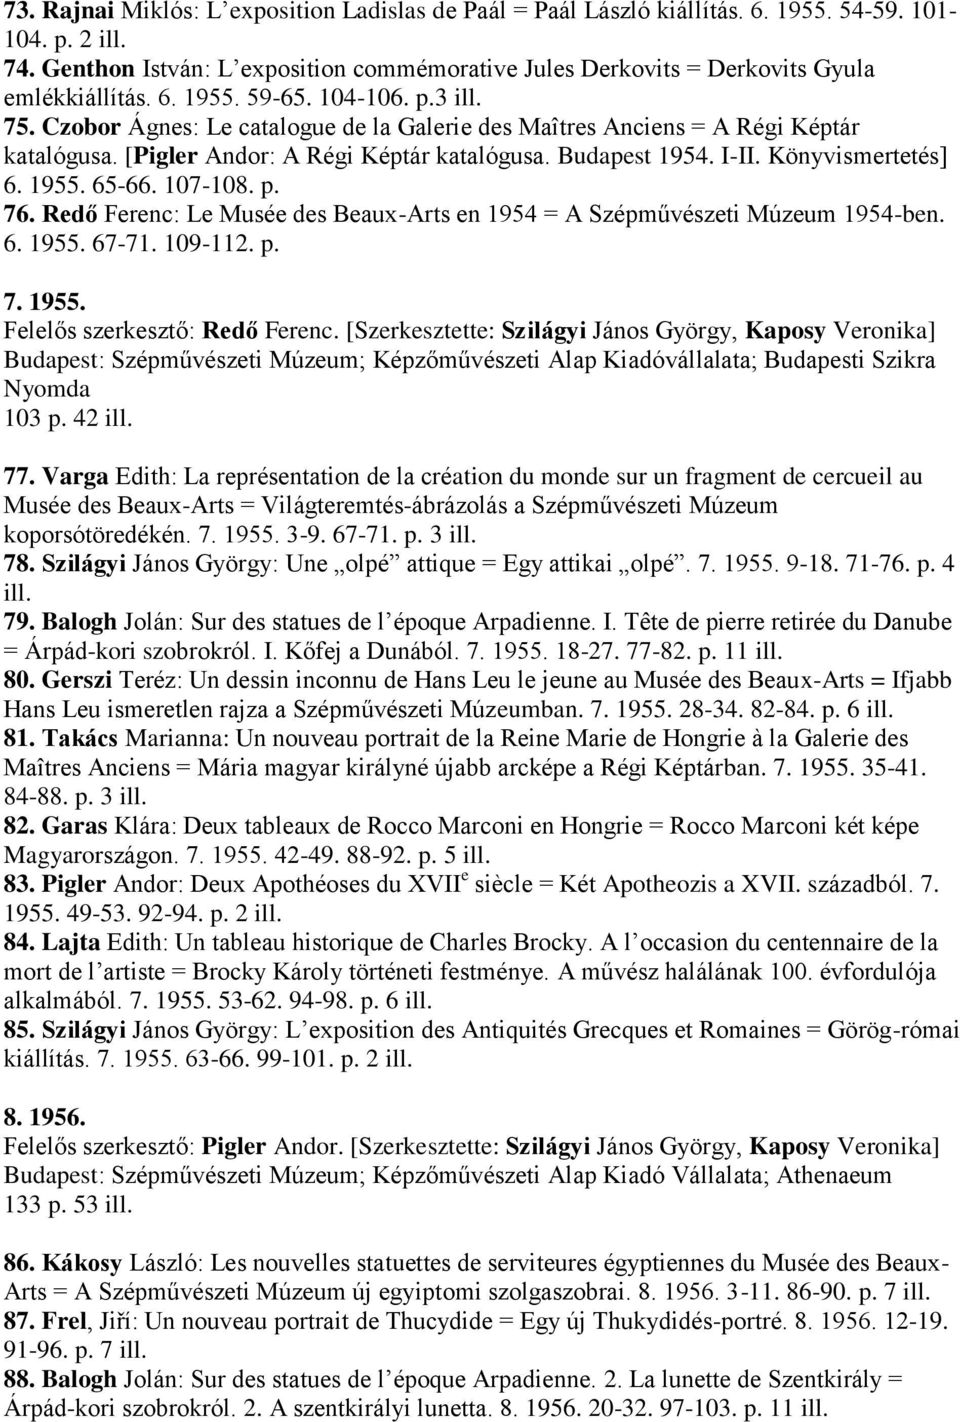 Czobor Ágnes: Le catalogue de la Galerie des Maîtres Anciens = A Régi Képtár katalógusa. [Pigler Andor: A Régi Képtár katalógusa. Budapest 1954. I-II. Könyvismertetés] 6. 1955. 65-66. 107-108. p. 76.